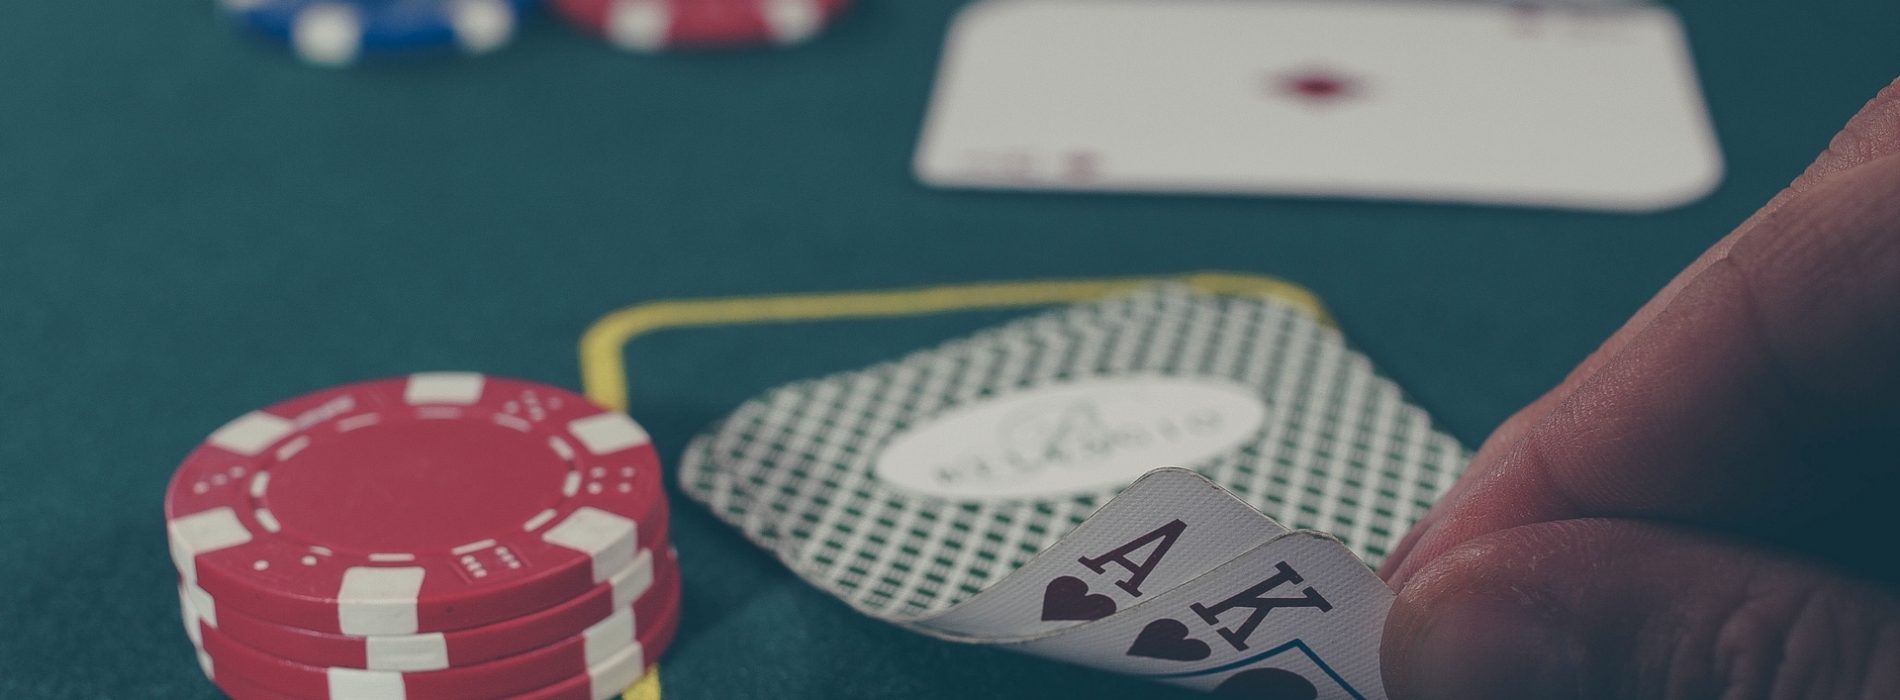 Prawdy i mity na temat hazardu